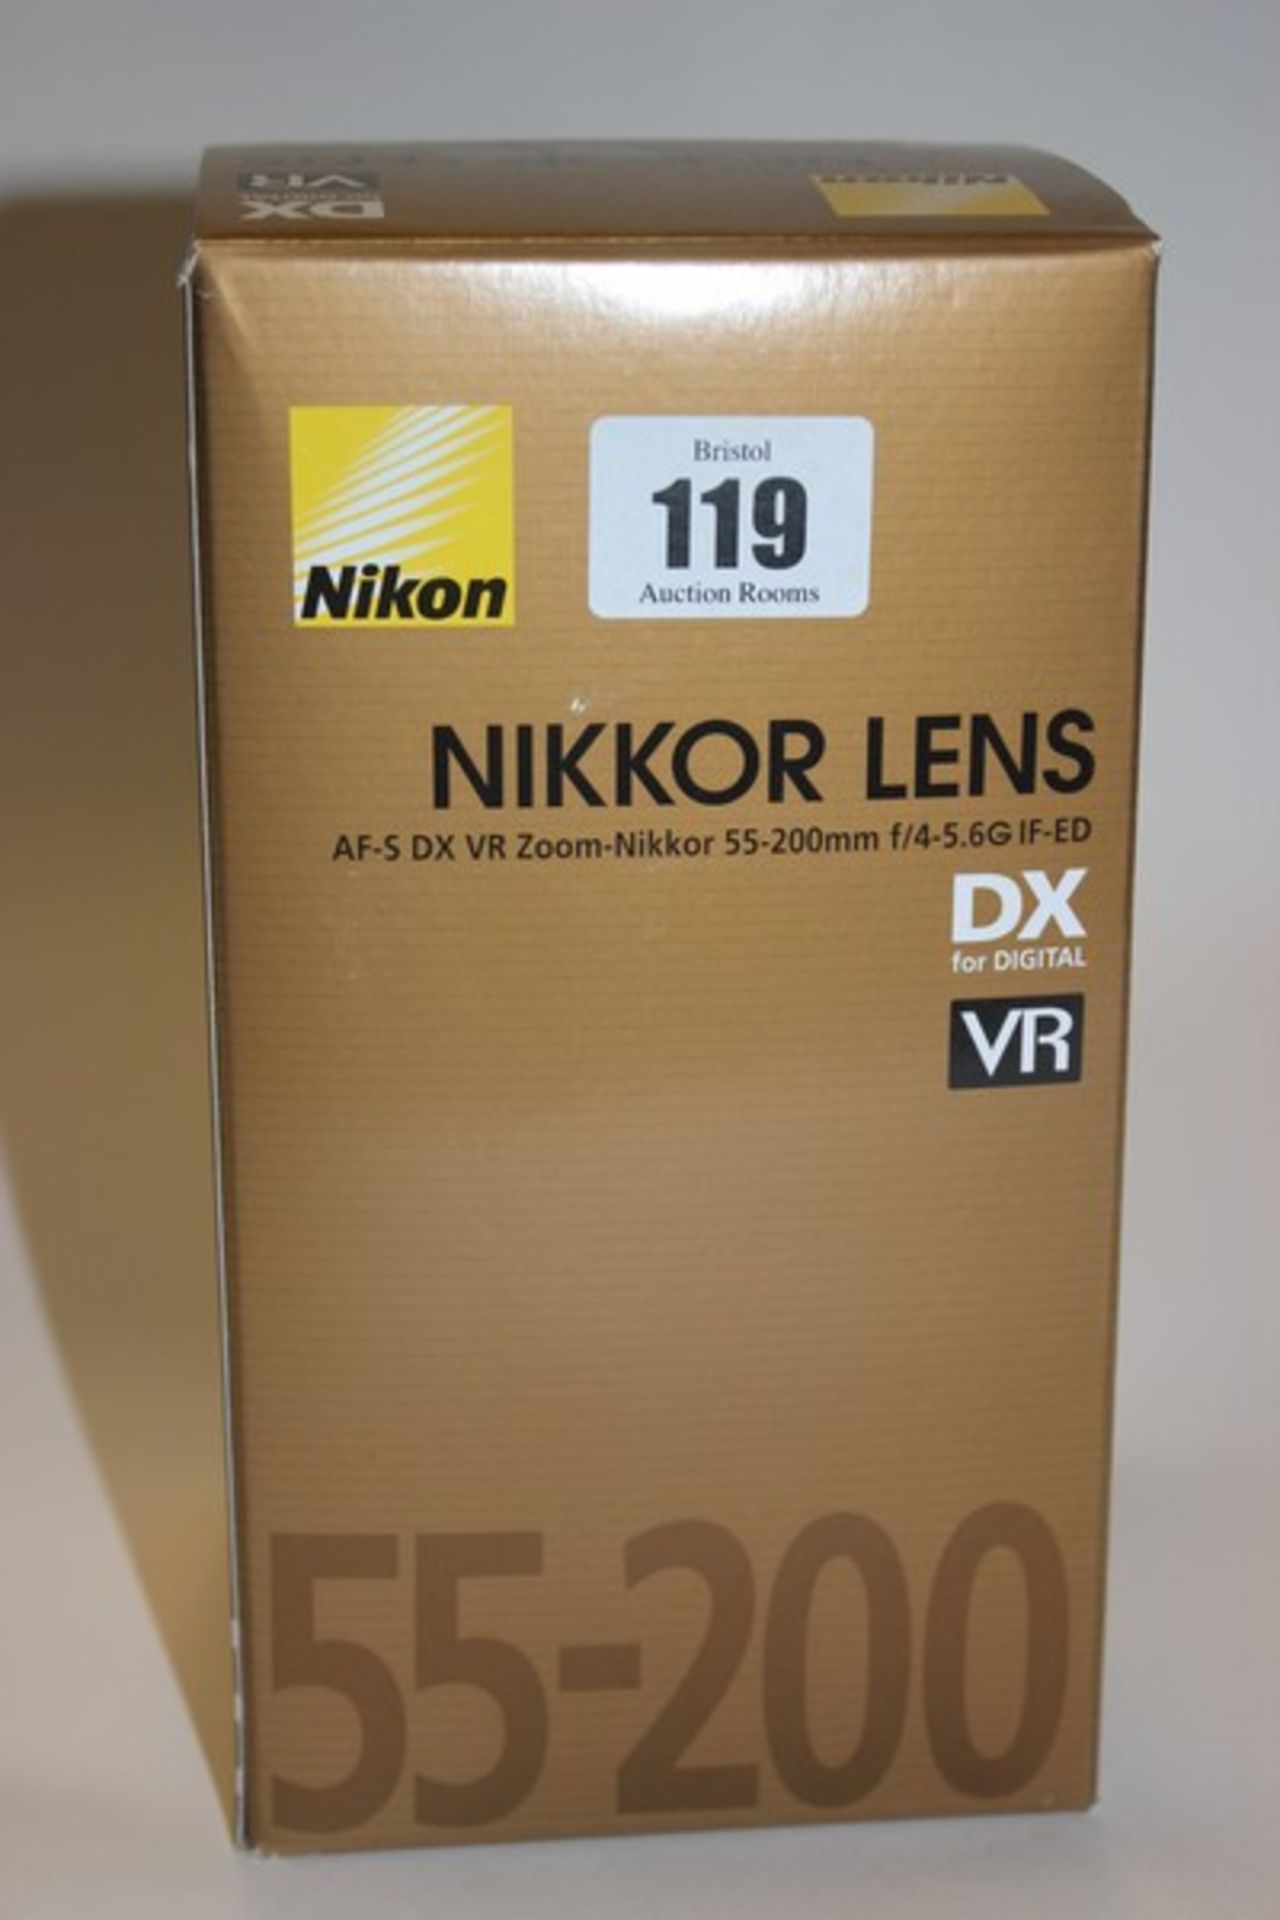 A Nikon Nikkor Lens AF-S DX VR Zoom-Nikkor 55-200mm f4-5.6G (Boxed as new).